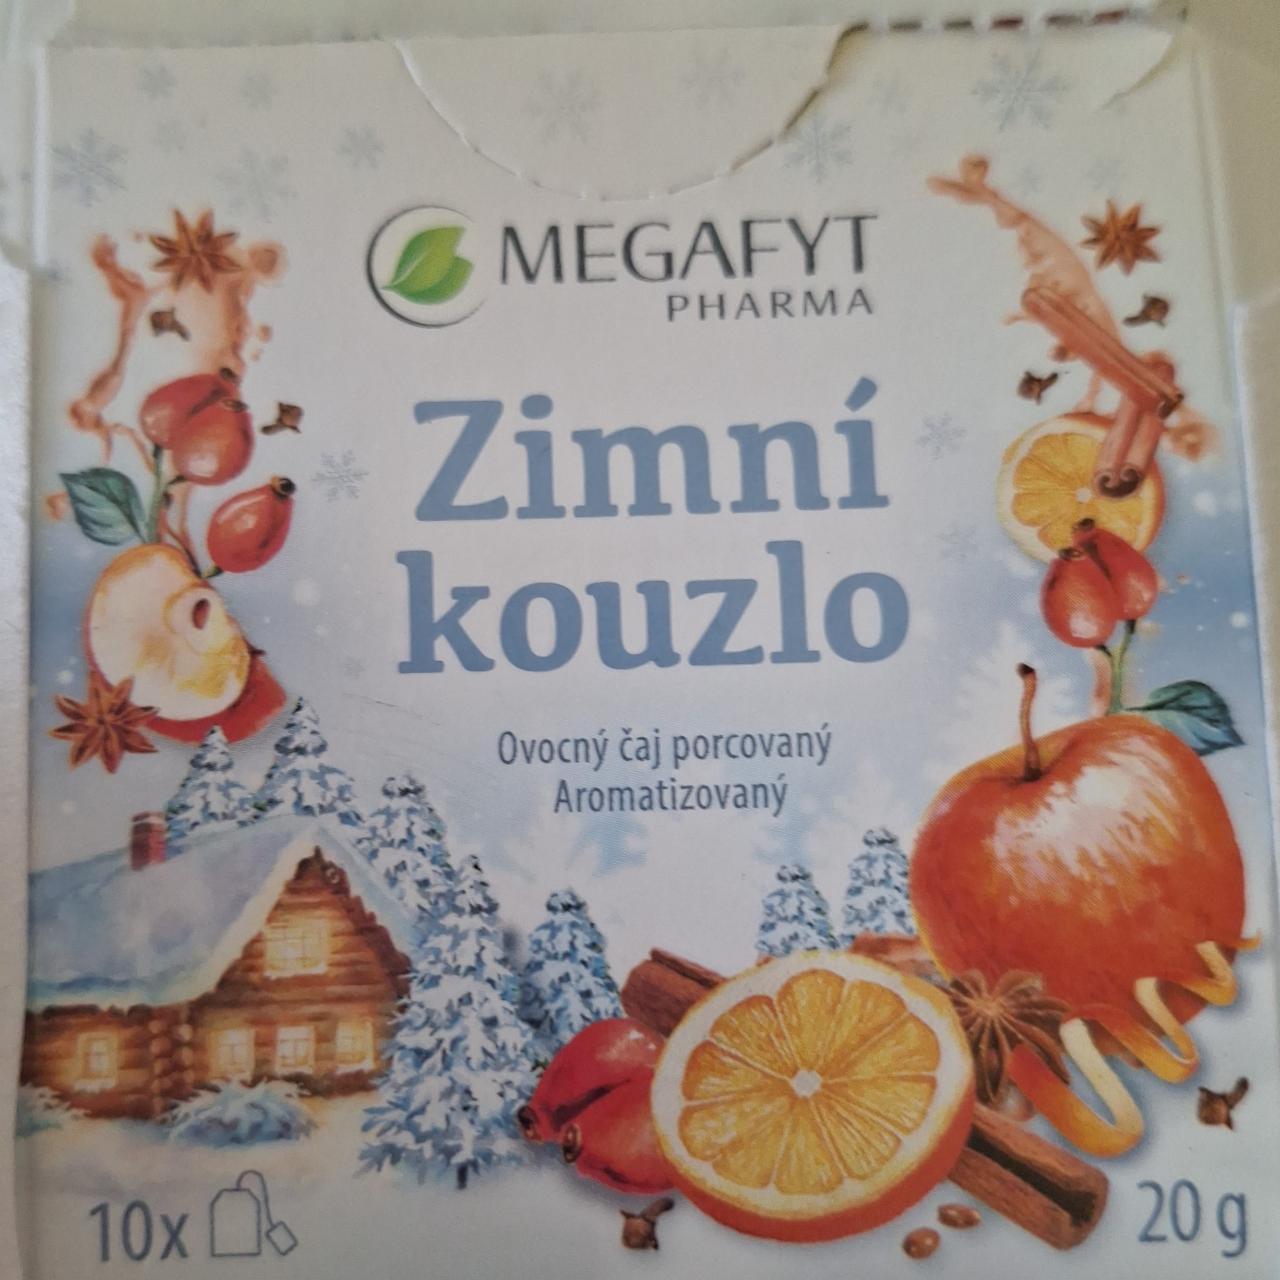 Fotografie - Zimní kouzlo ovocný čaj Megafyt